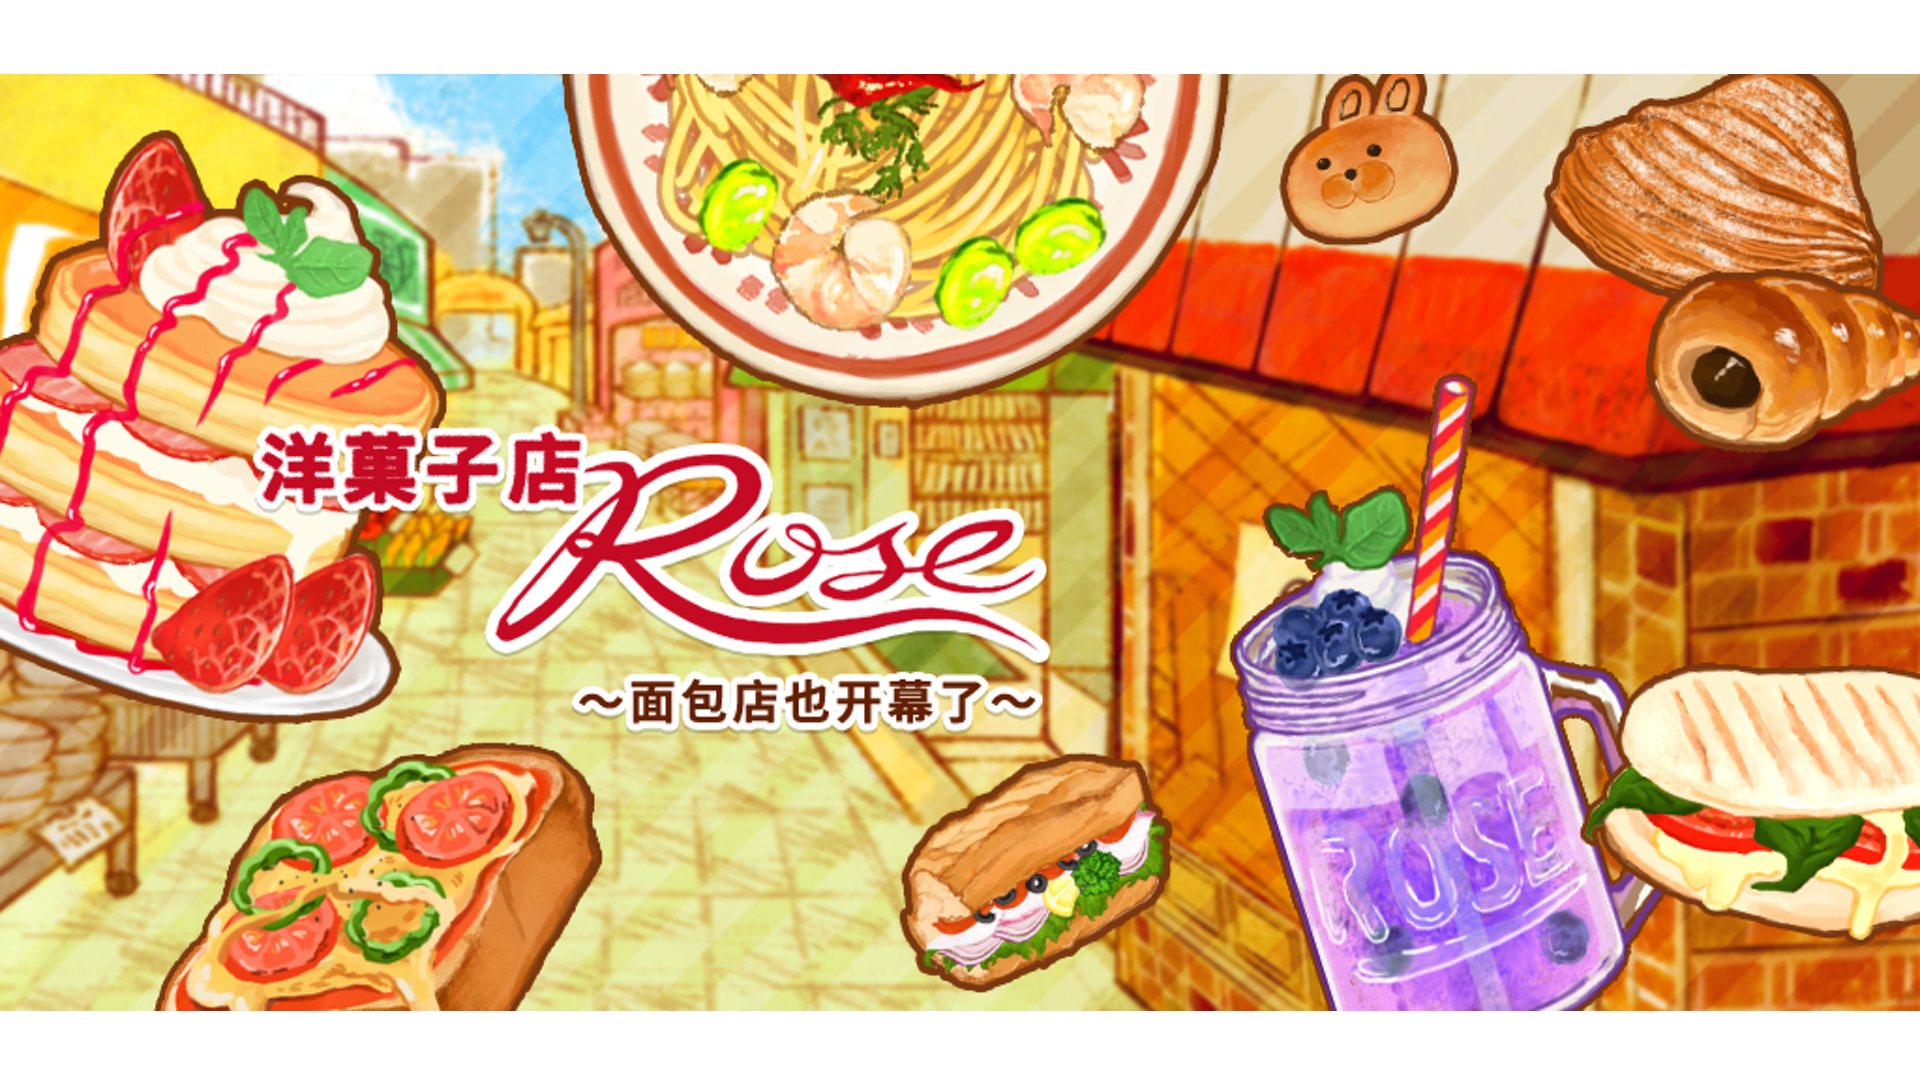 洋果子店rose食譜攻略 No.652-660